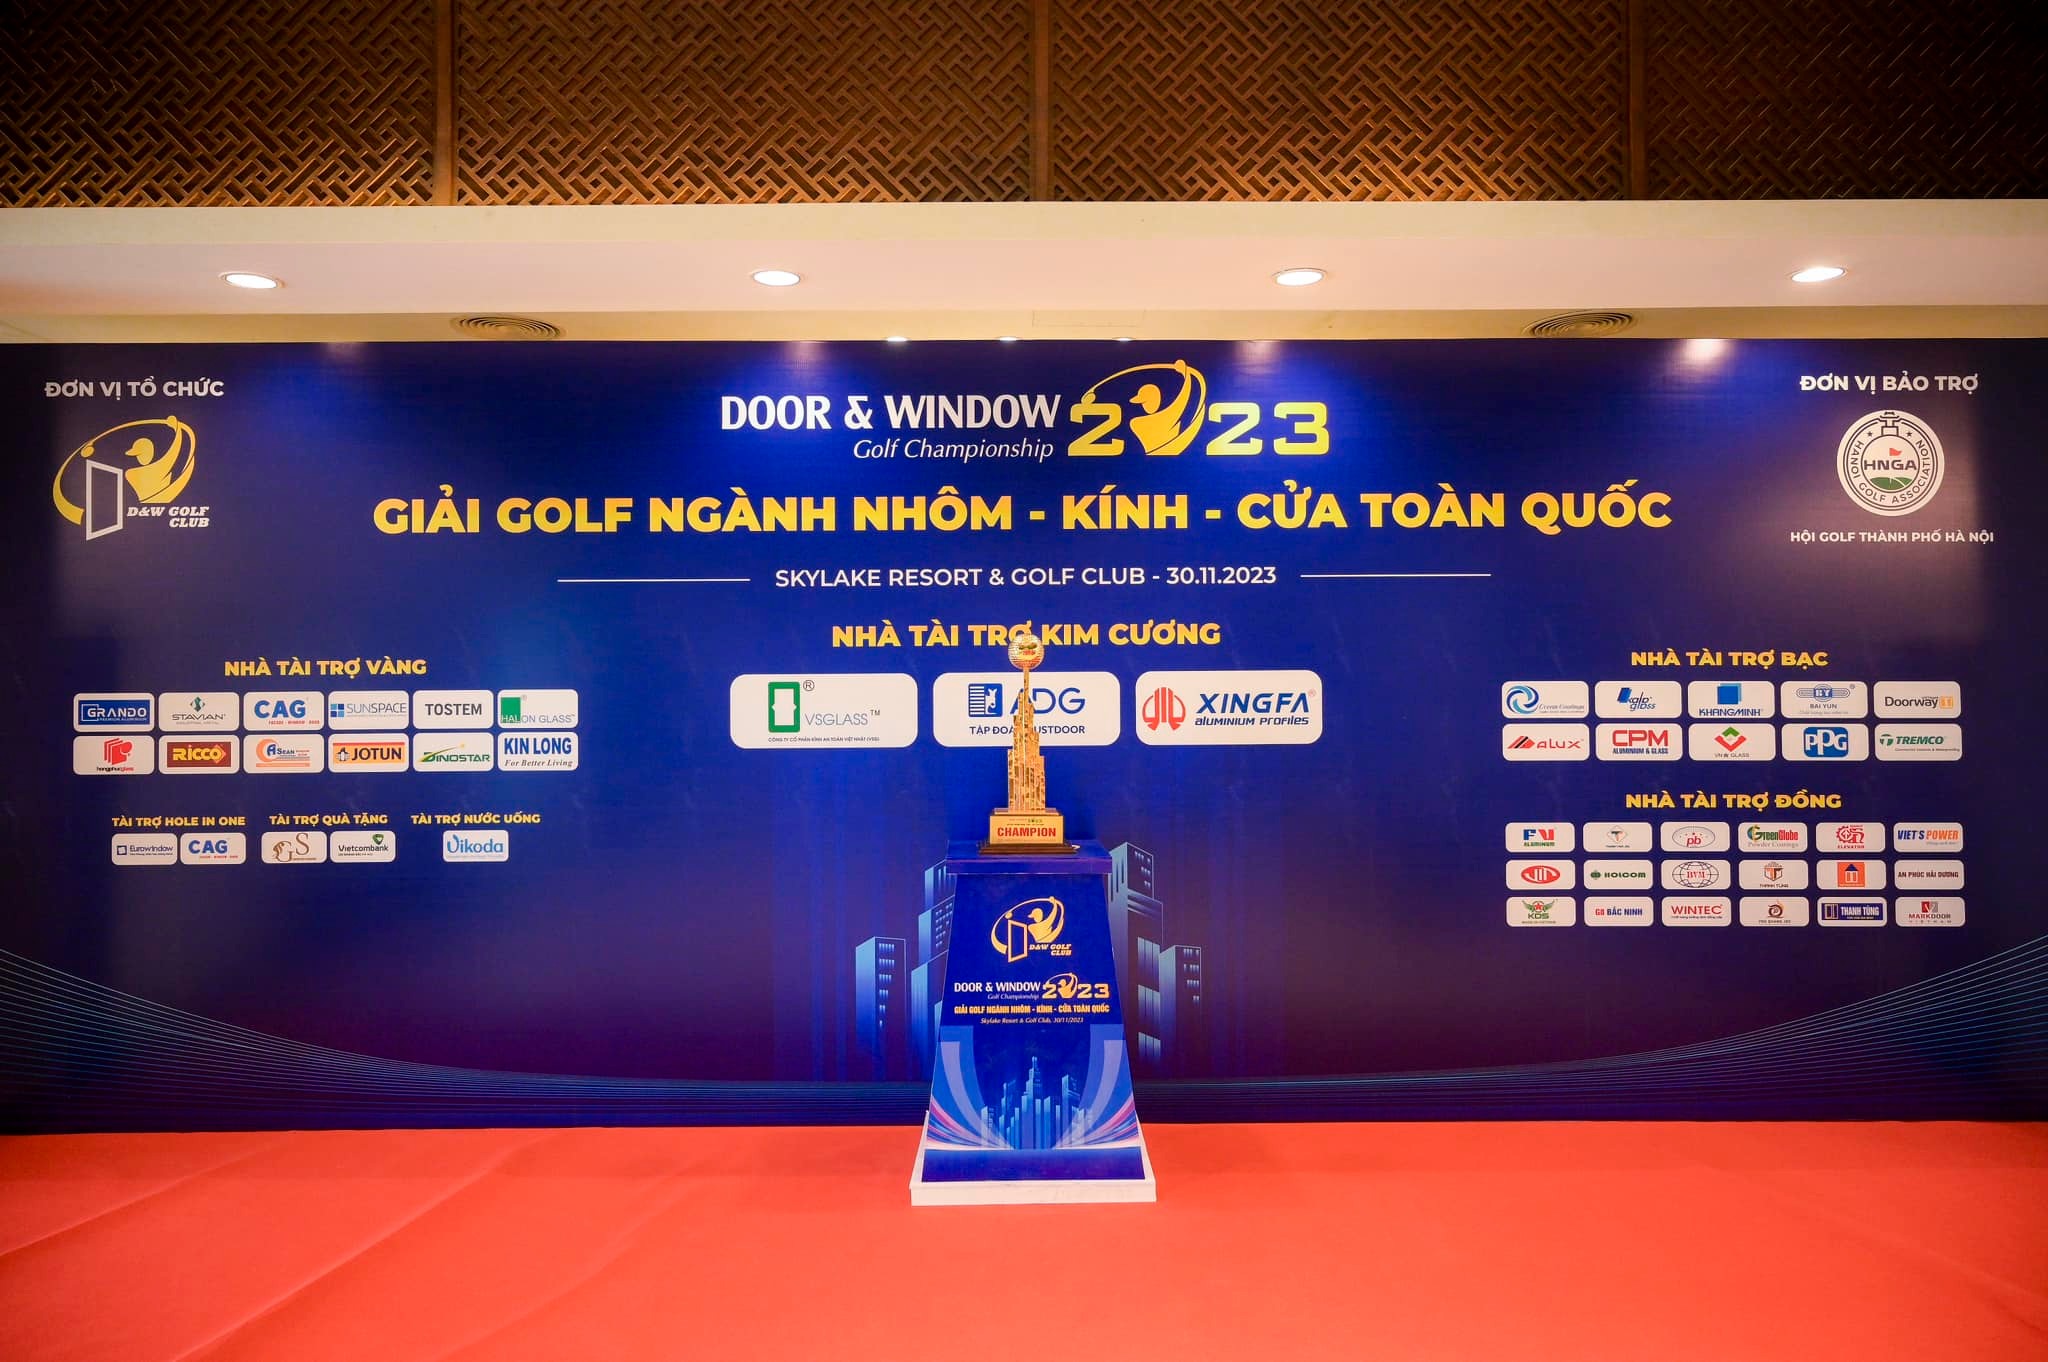 Kin Long Việt Nam – nhà tài trợ Vàng Giải bóng Golf ngành nhôm – kính – cửa toàn quốc 2023